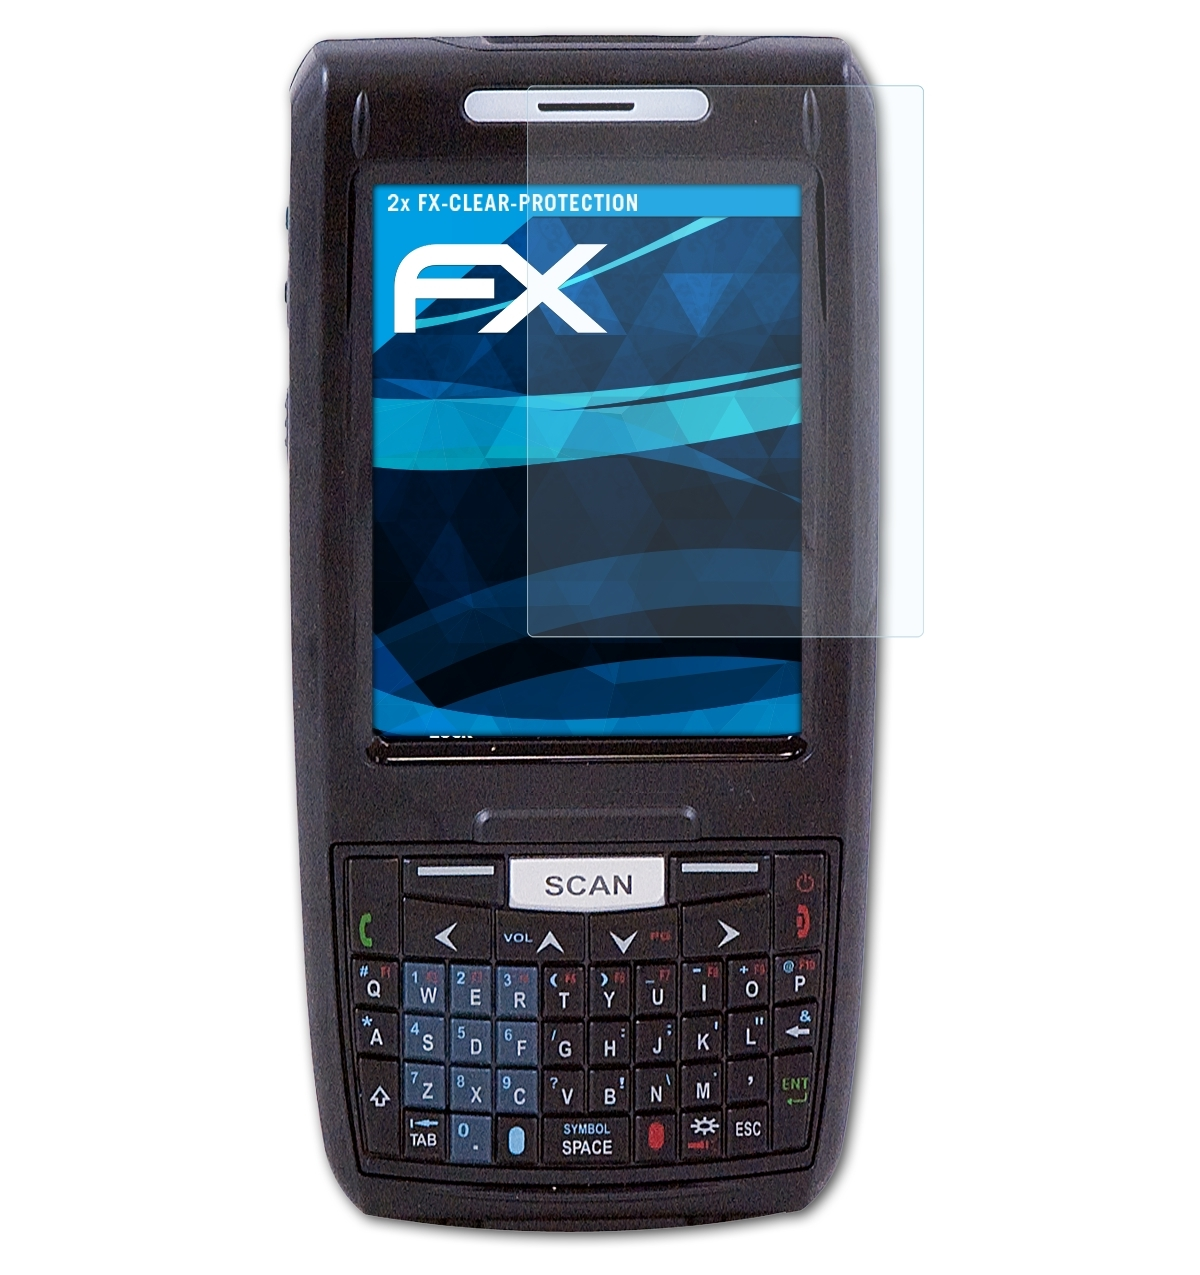 ATFOLIX 2x FX-Clear Displayschutz(für Honeywell Dolphin 7800)